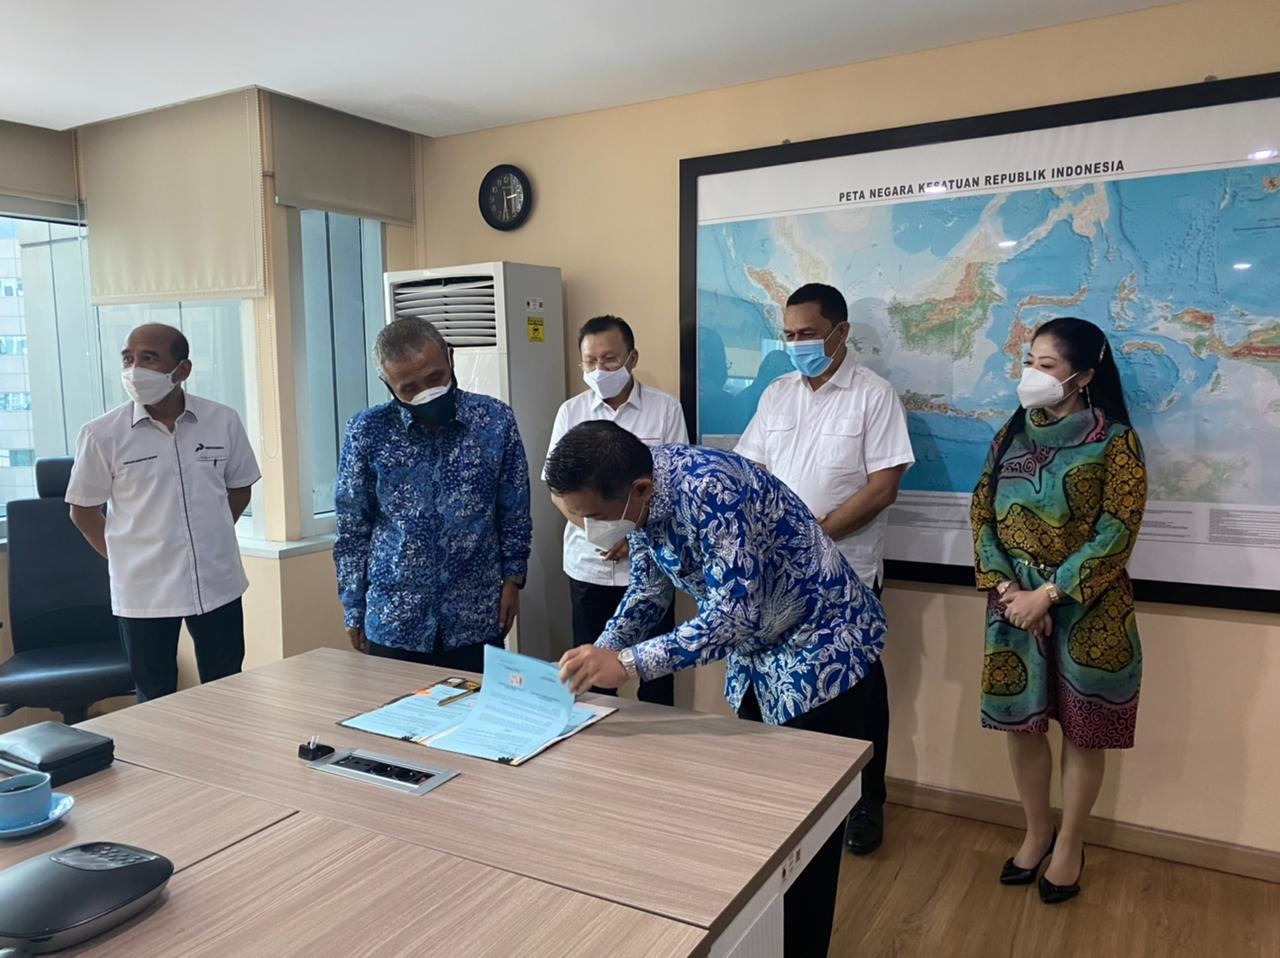 Berkat PT. Krakatau, Indonesia Buka Jasa Layanan Bunkering Marine Fuel Oil di Selat Sunda